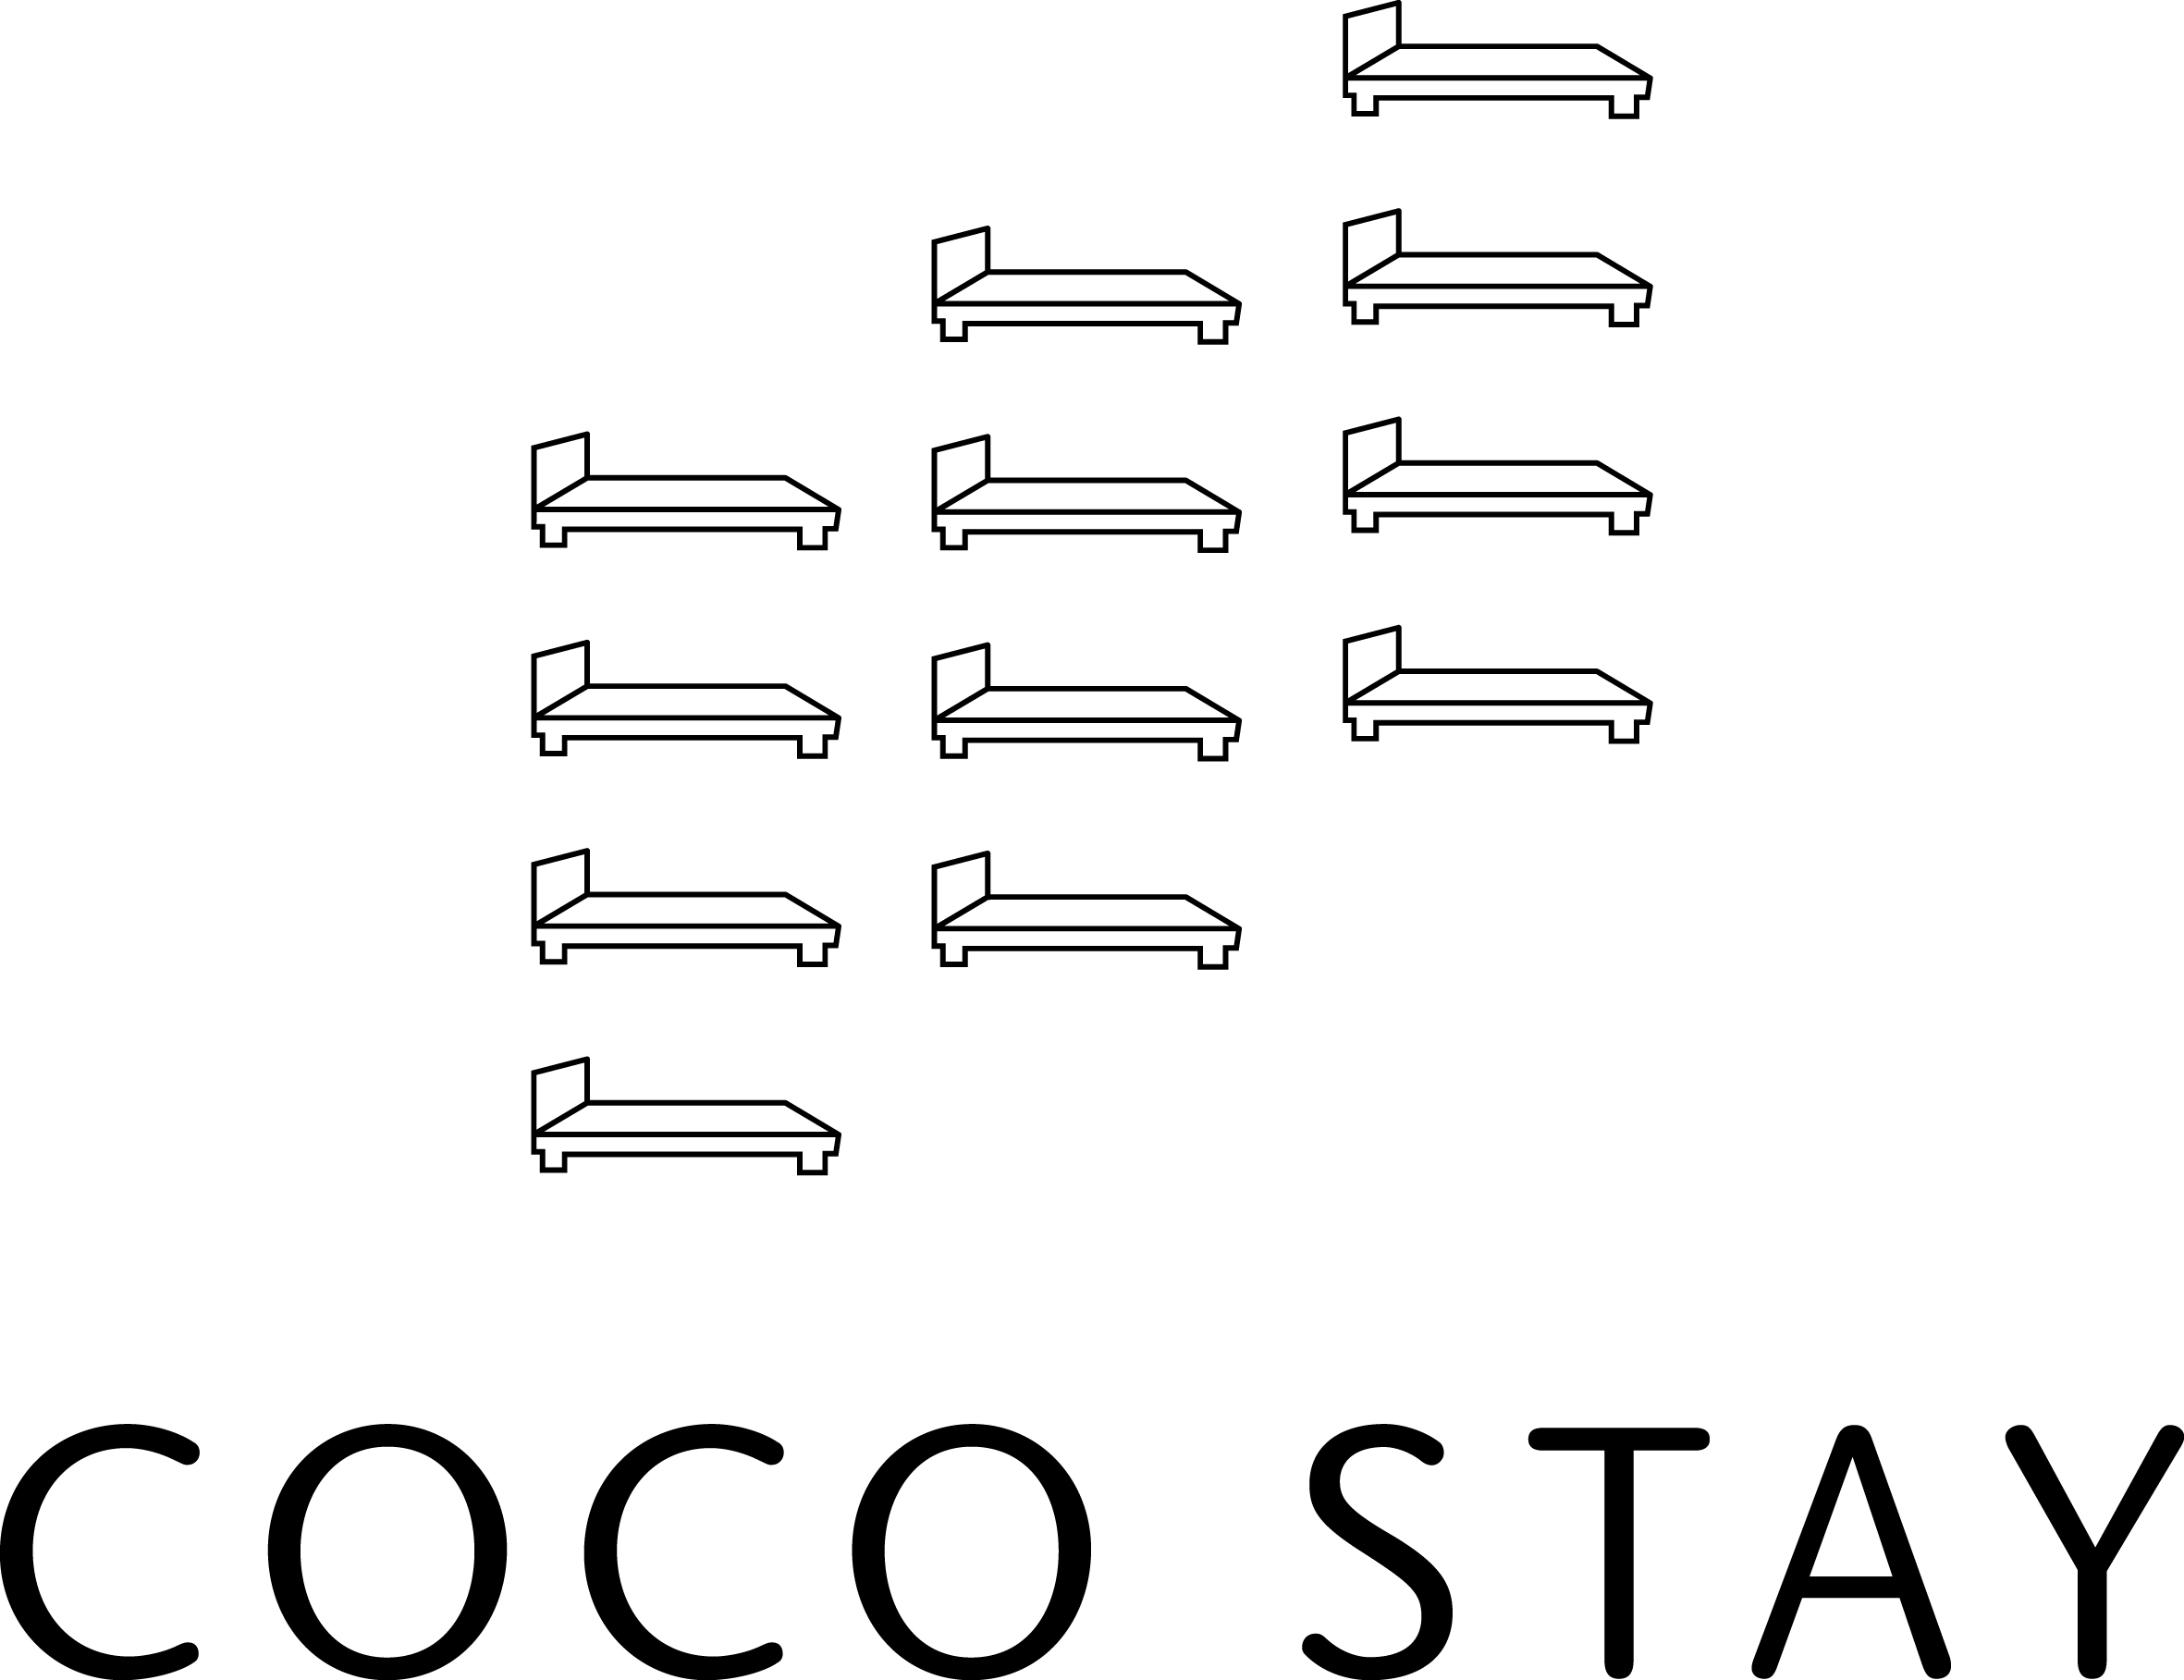 【COCO STAY】スタンダードプラン